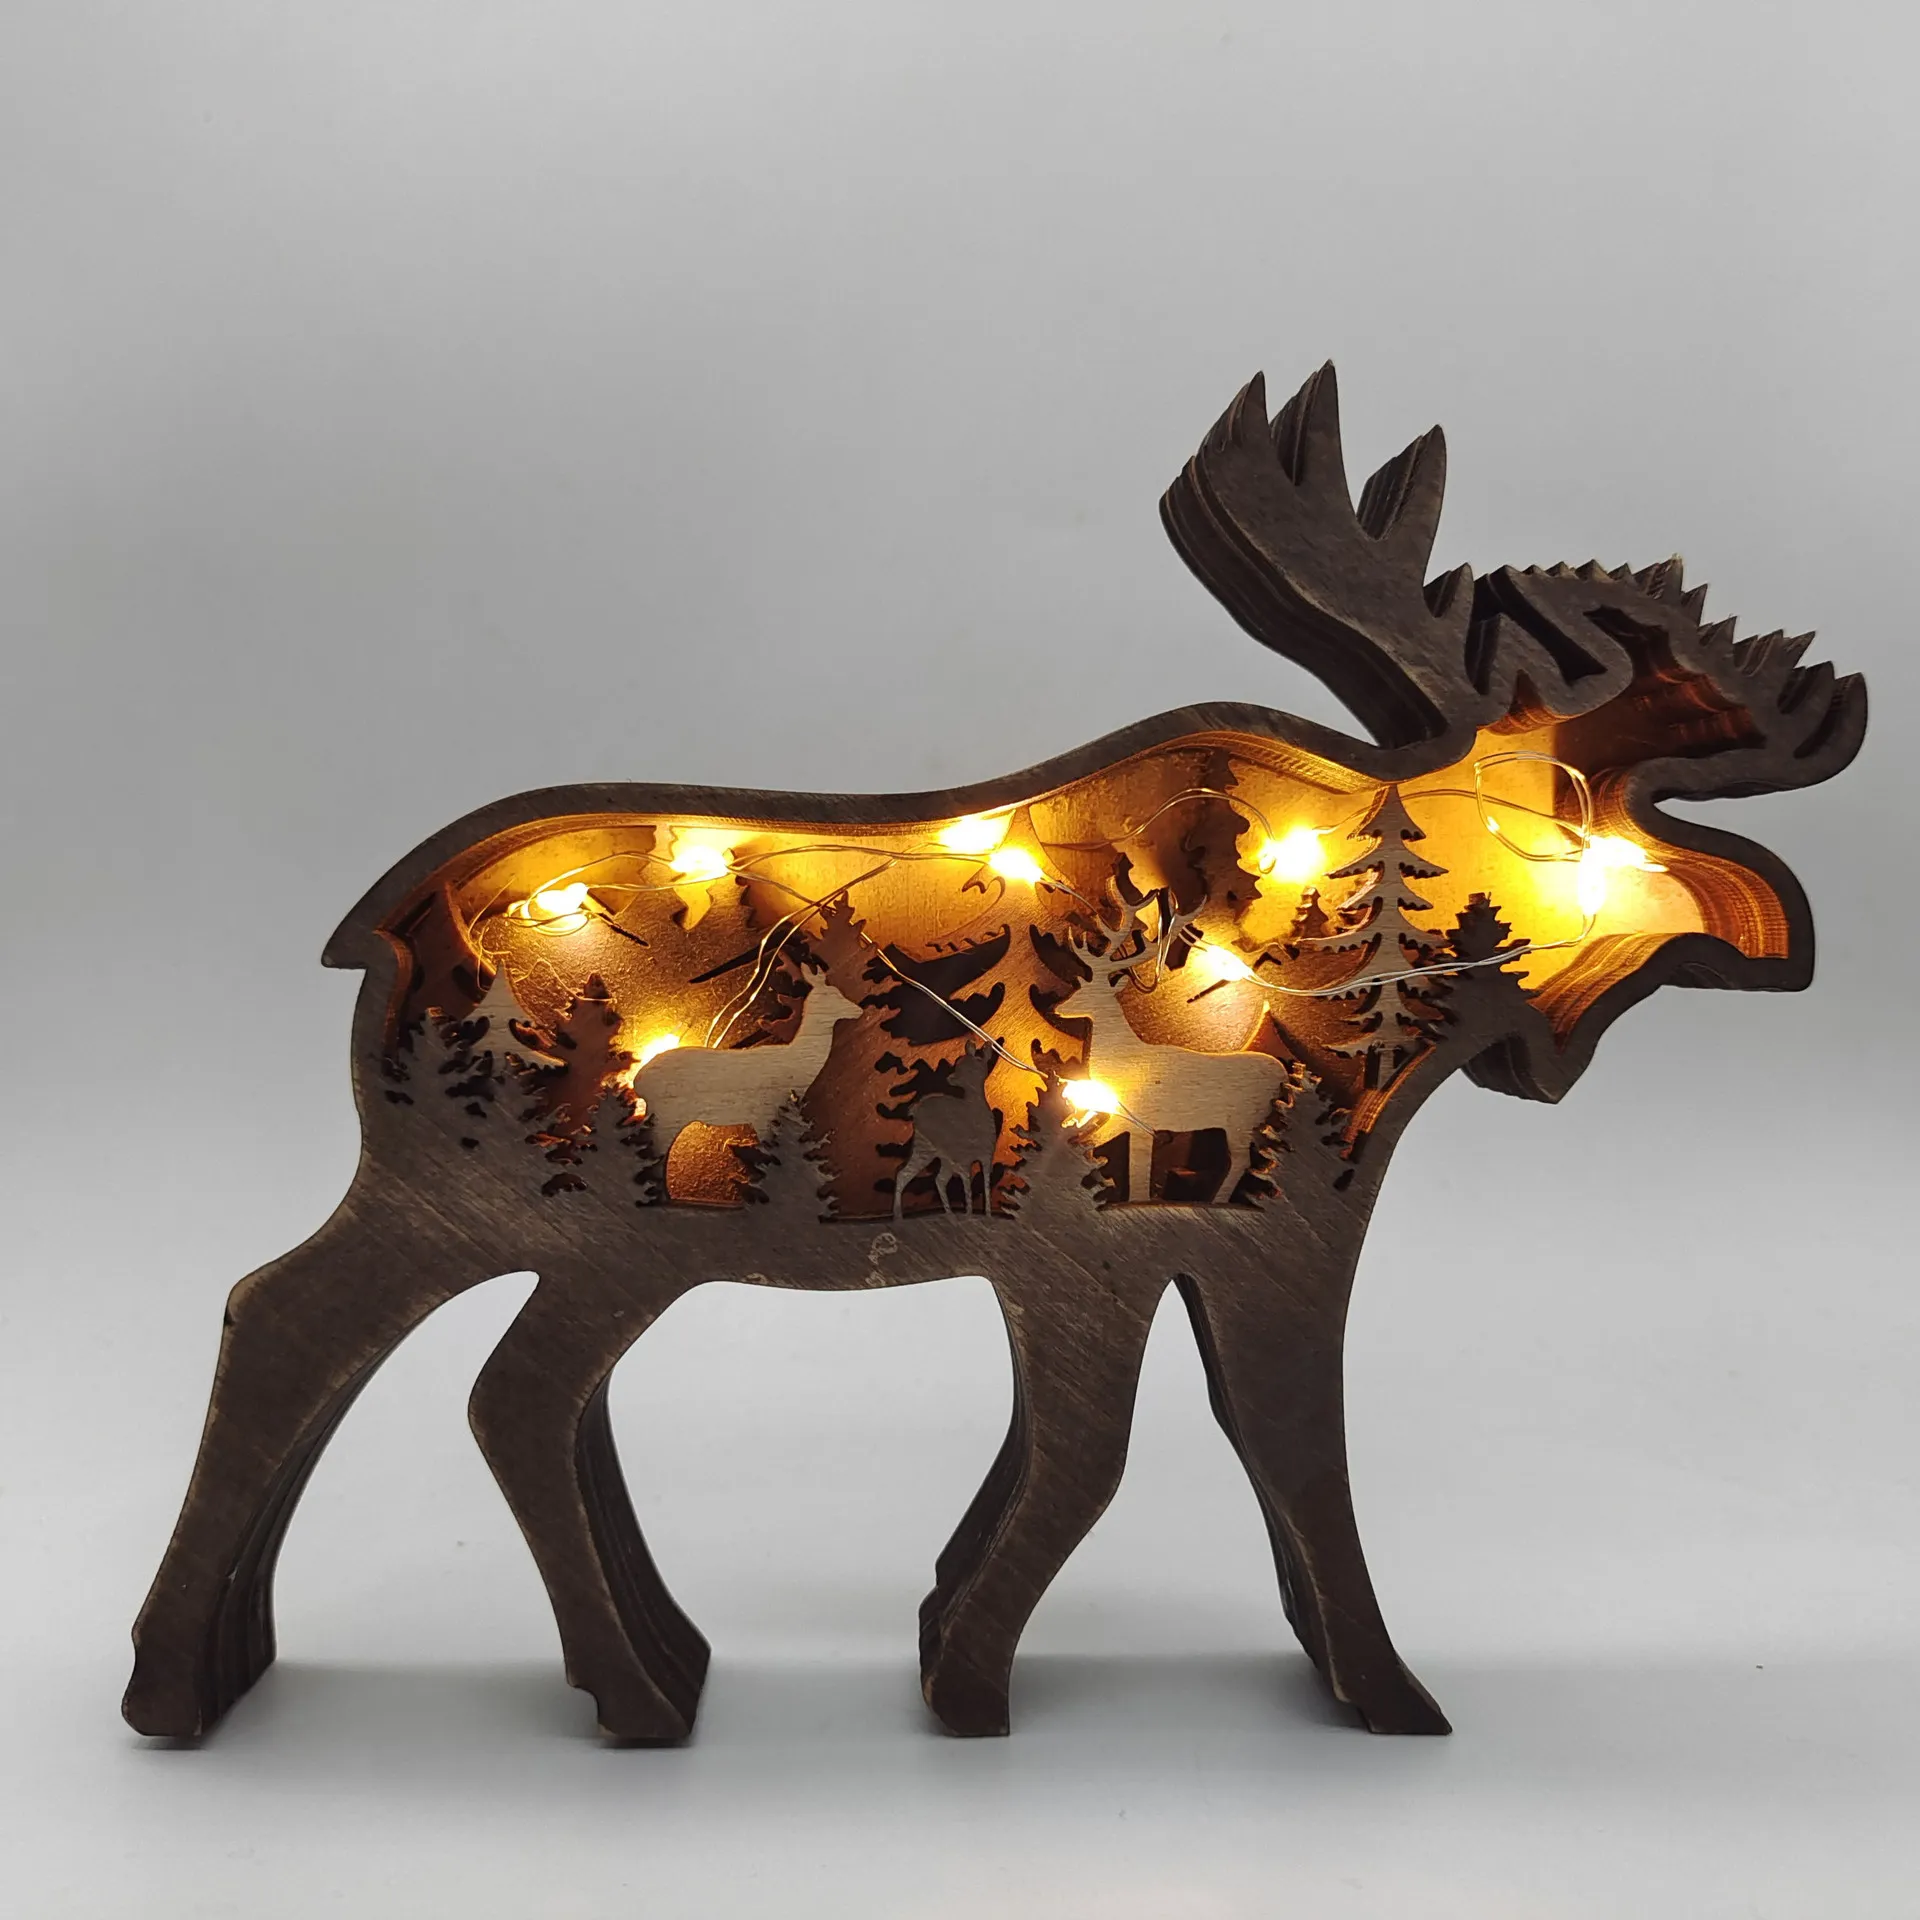 2021 Yeni Noel Ahşap El Sanatları Yaratıcı Kuzey Amerikan Orman Hayvanlar Ev Dekorasyon Elk Brown Ayı Süsler Toptan